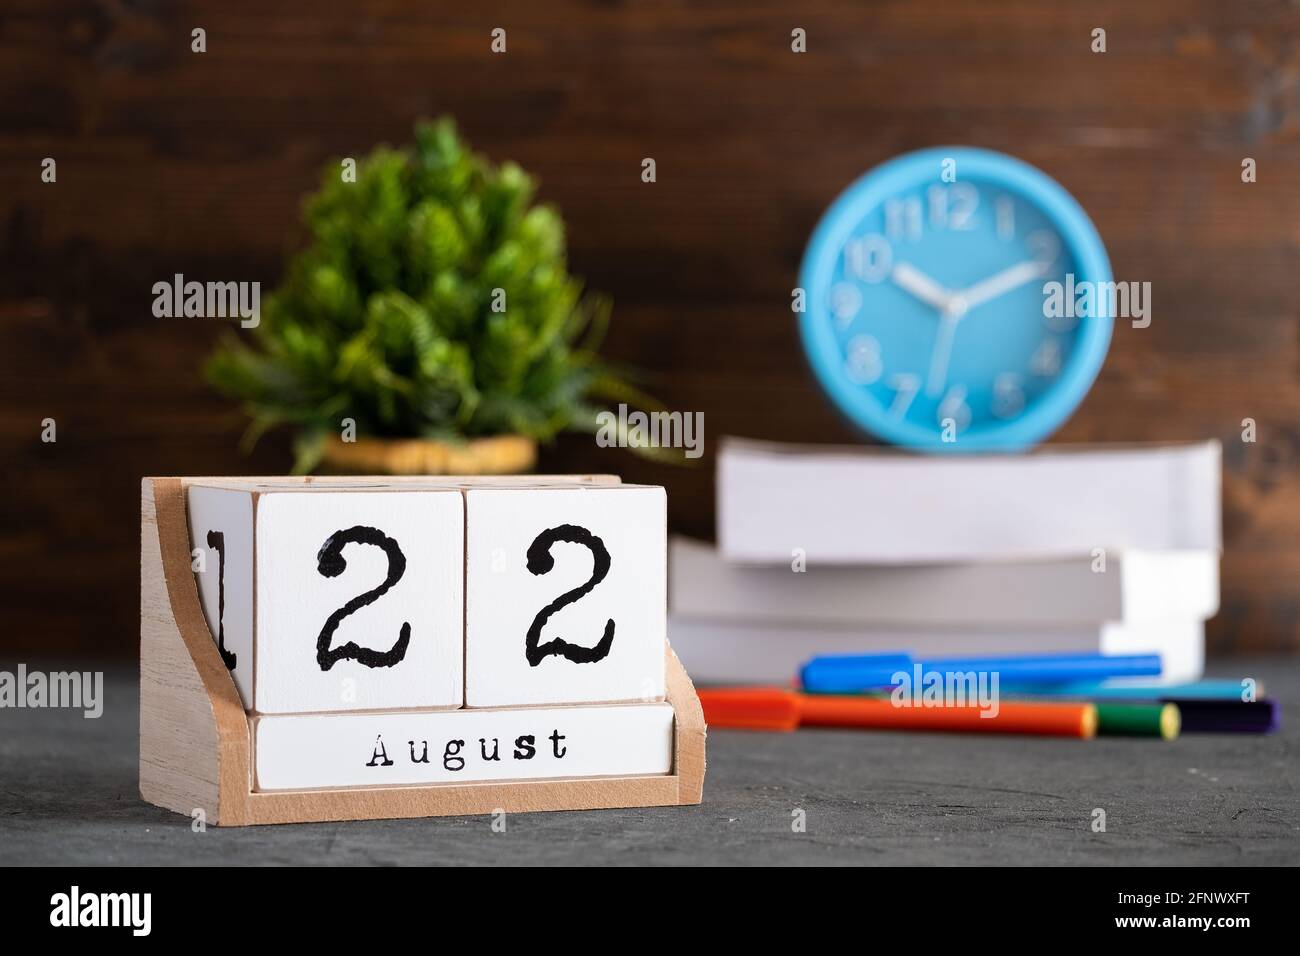 22 août. Août 22 calendrier cube en bois avec des objets flous sur fond. Banque D'Images